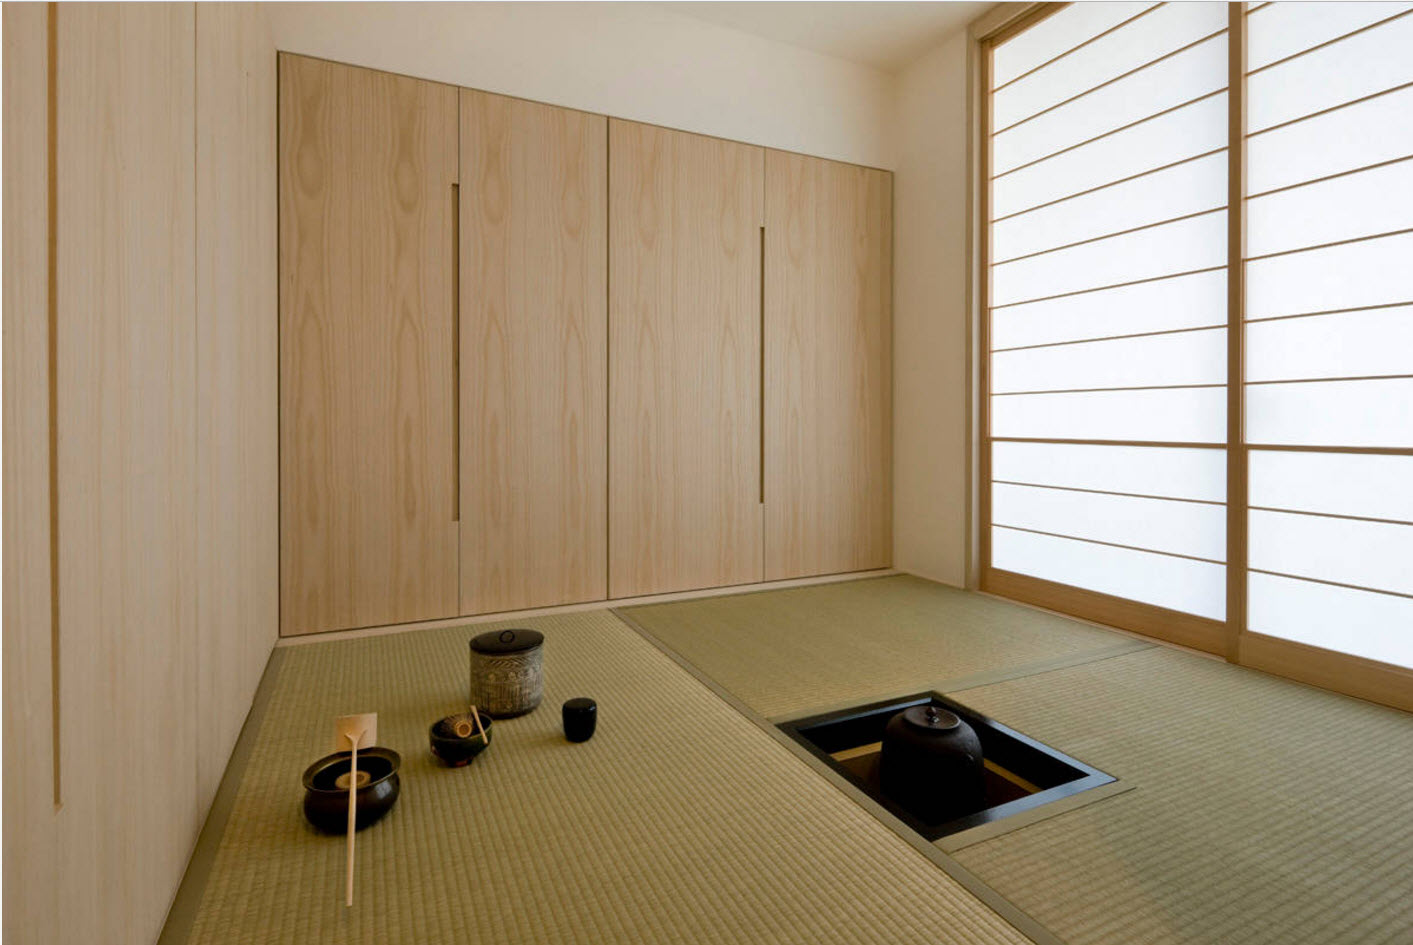 אפשרויות רעיונות לדירות בסגנון יפני - -